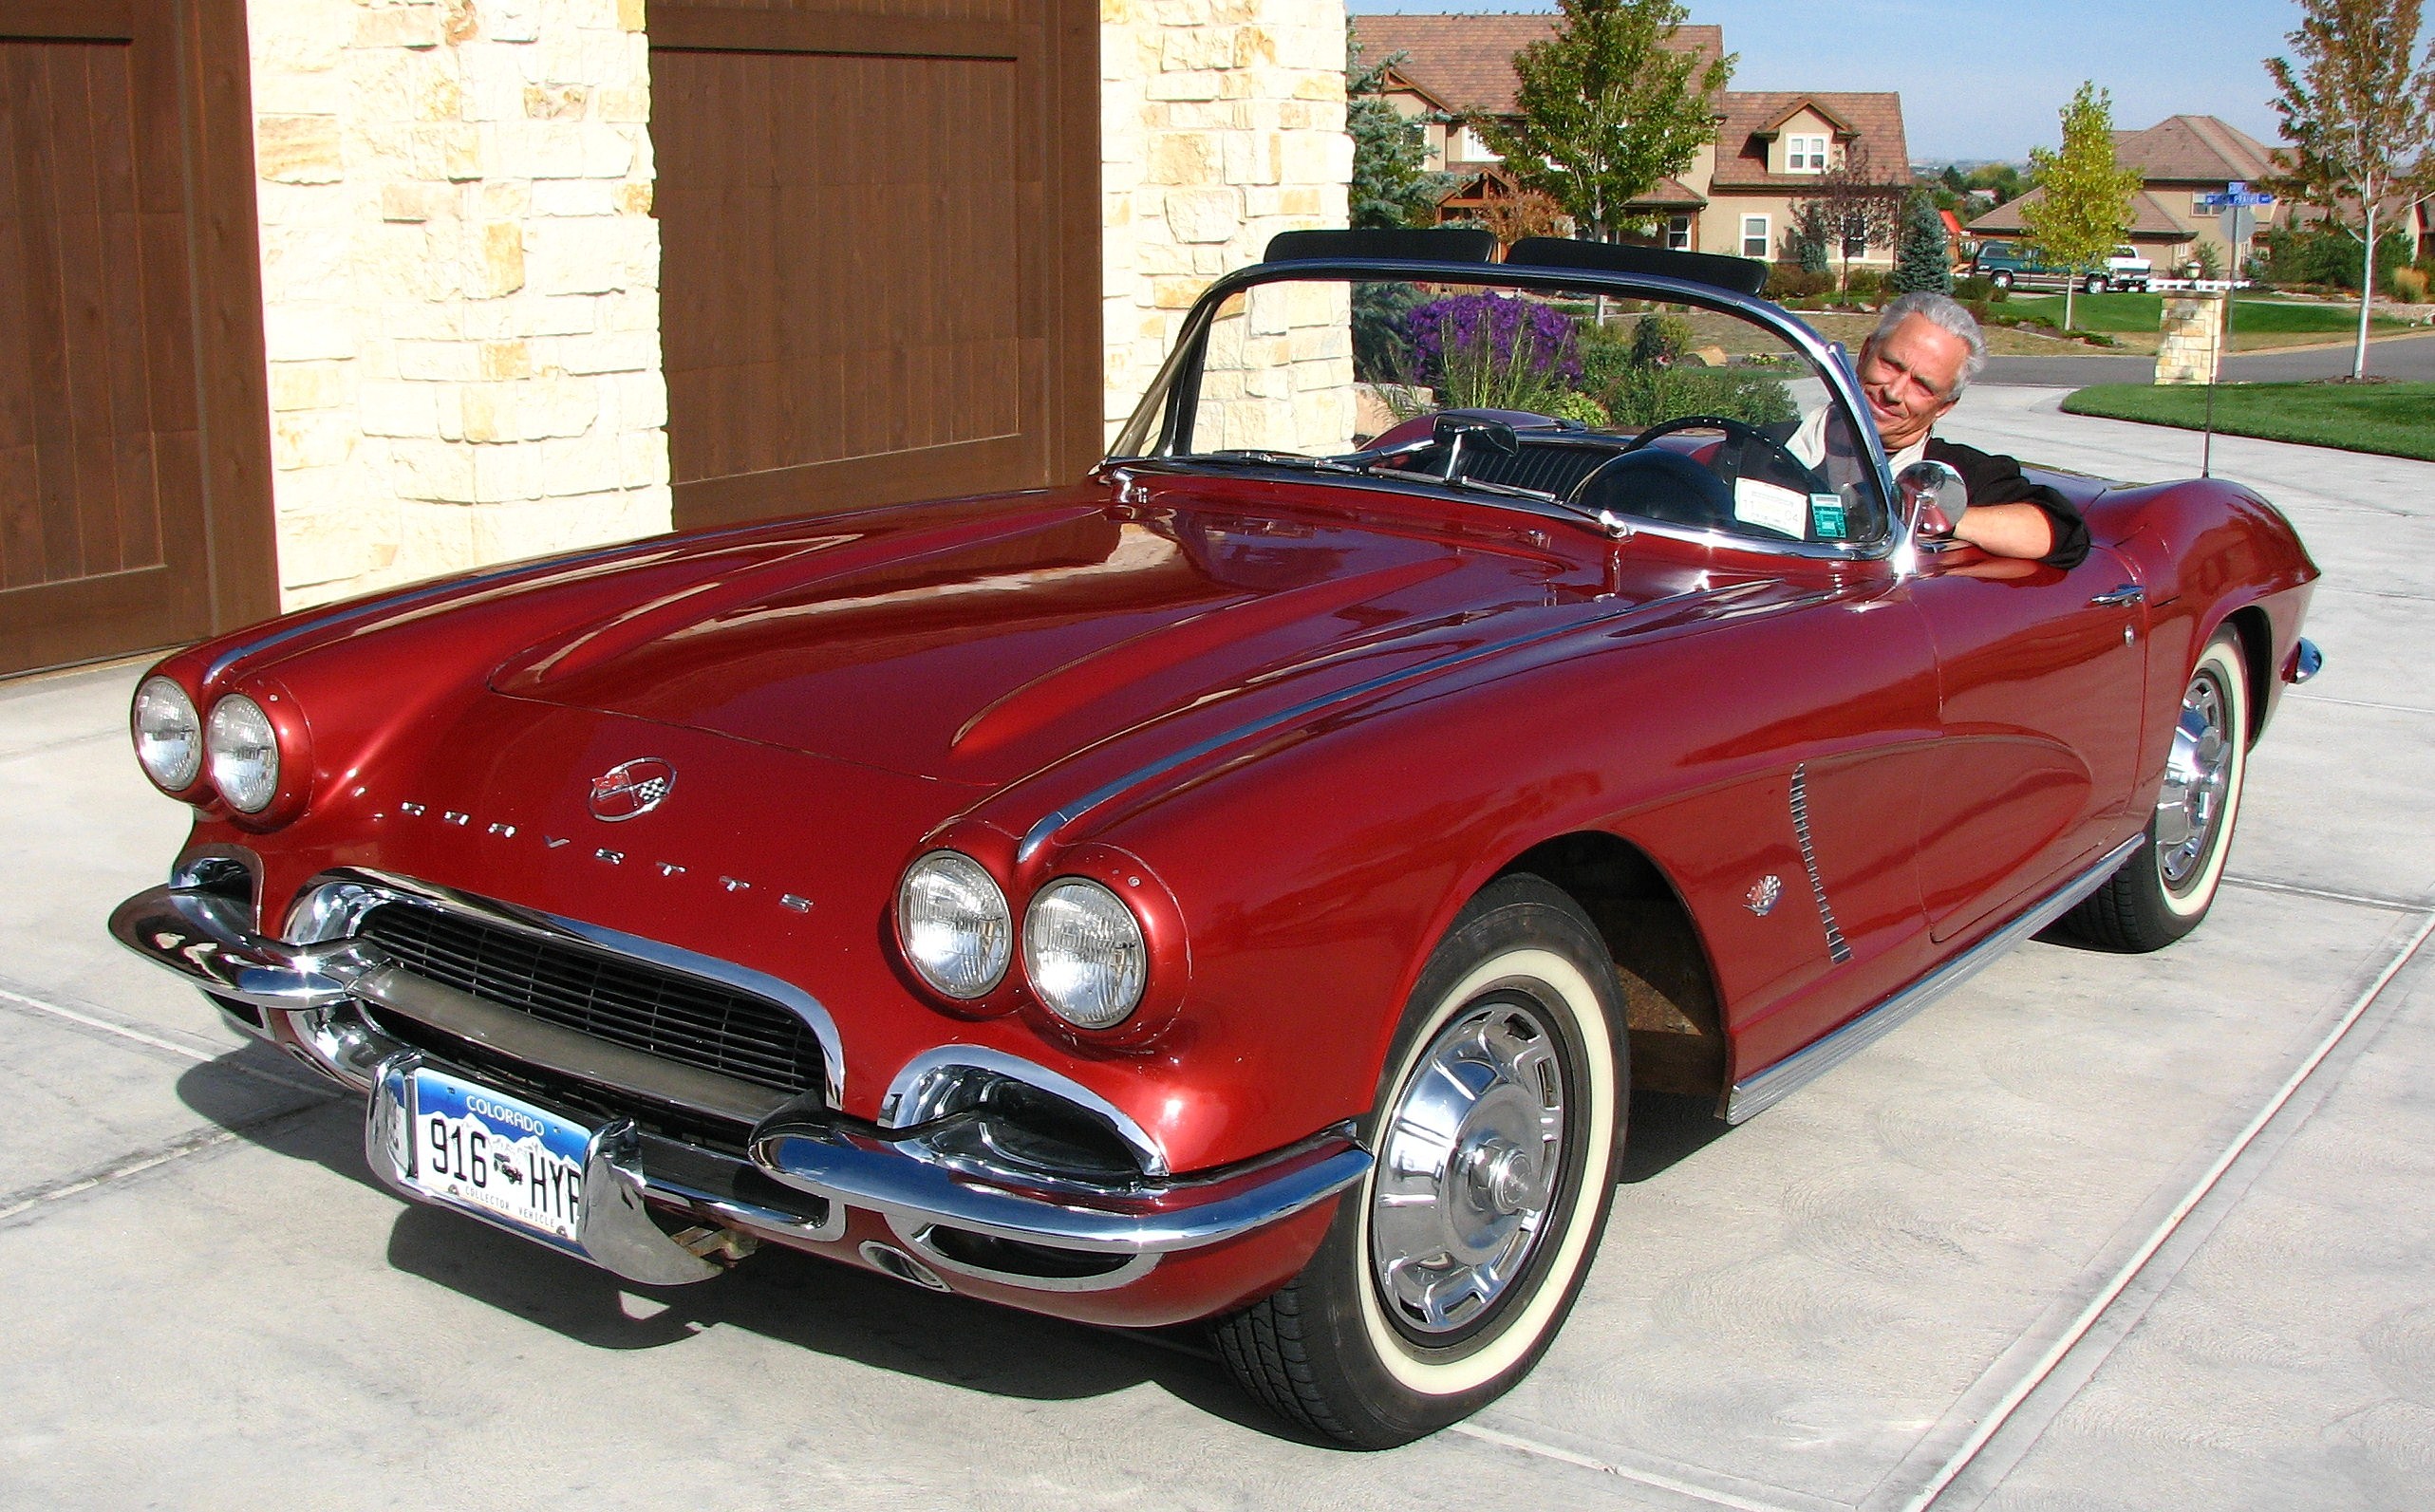 Dan's 1962 Corvette